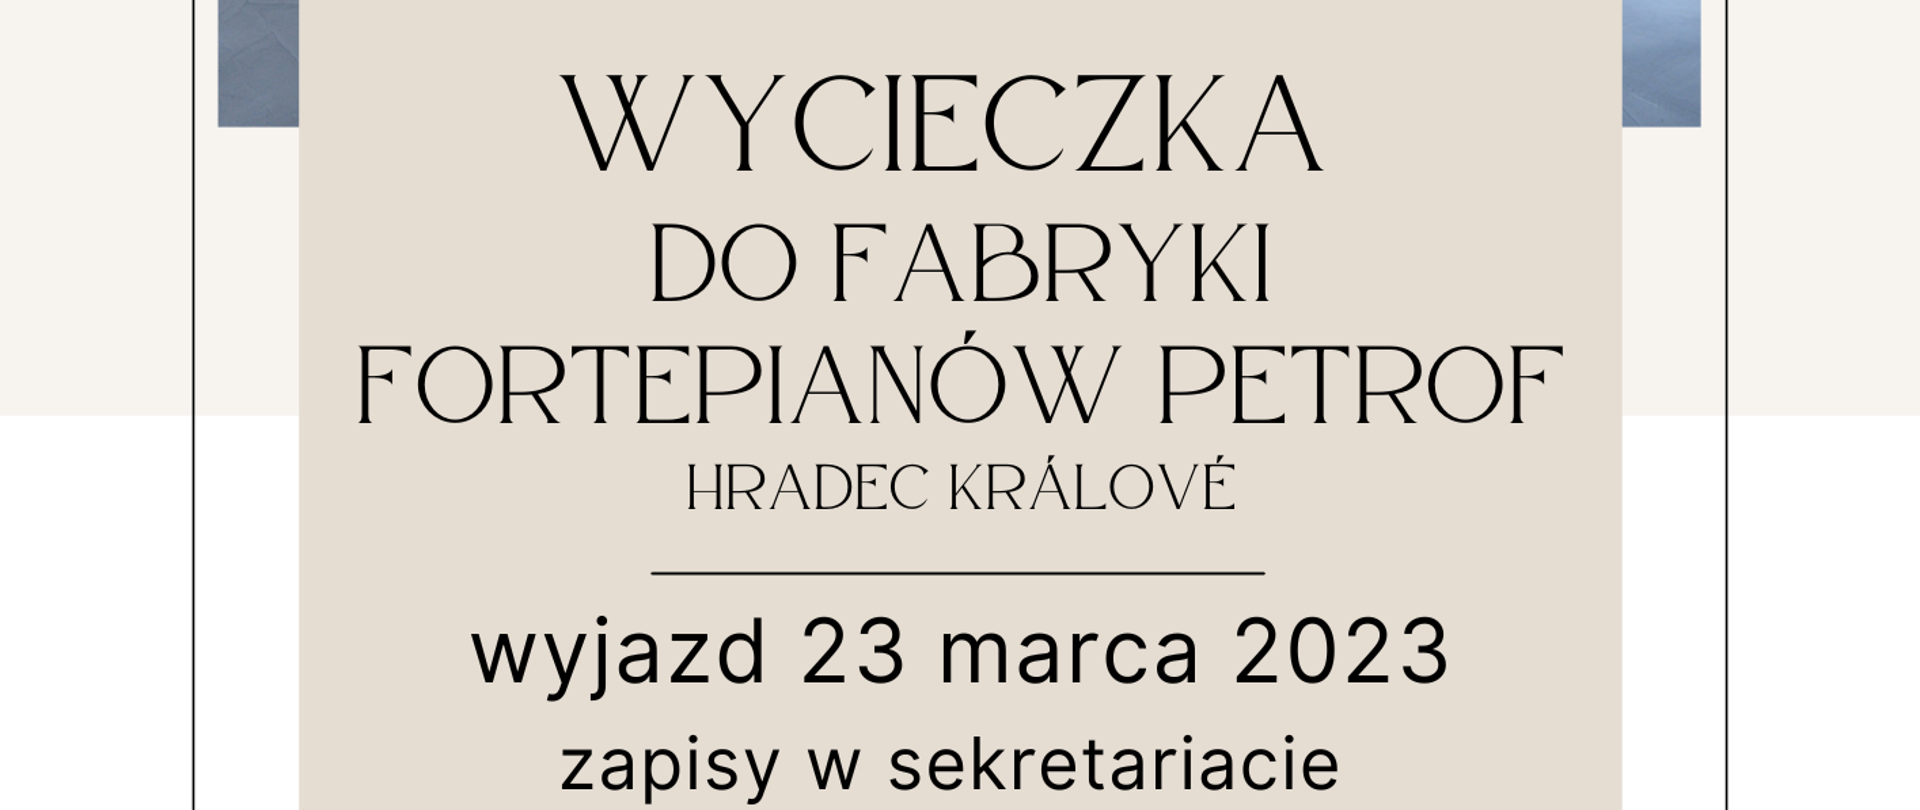 Wycieczka do fabryki fortepianów do Hradec Kralove 23 marca 2023
Plakat przedstawia galerię fortepianów - opisuje czas oraz miejsce wyjazdu do wymienionej fabryki.